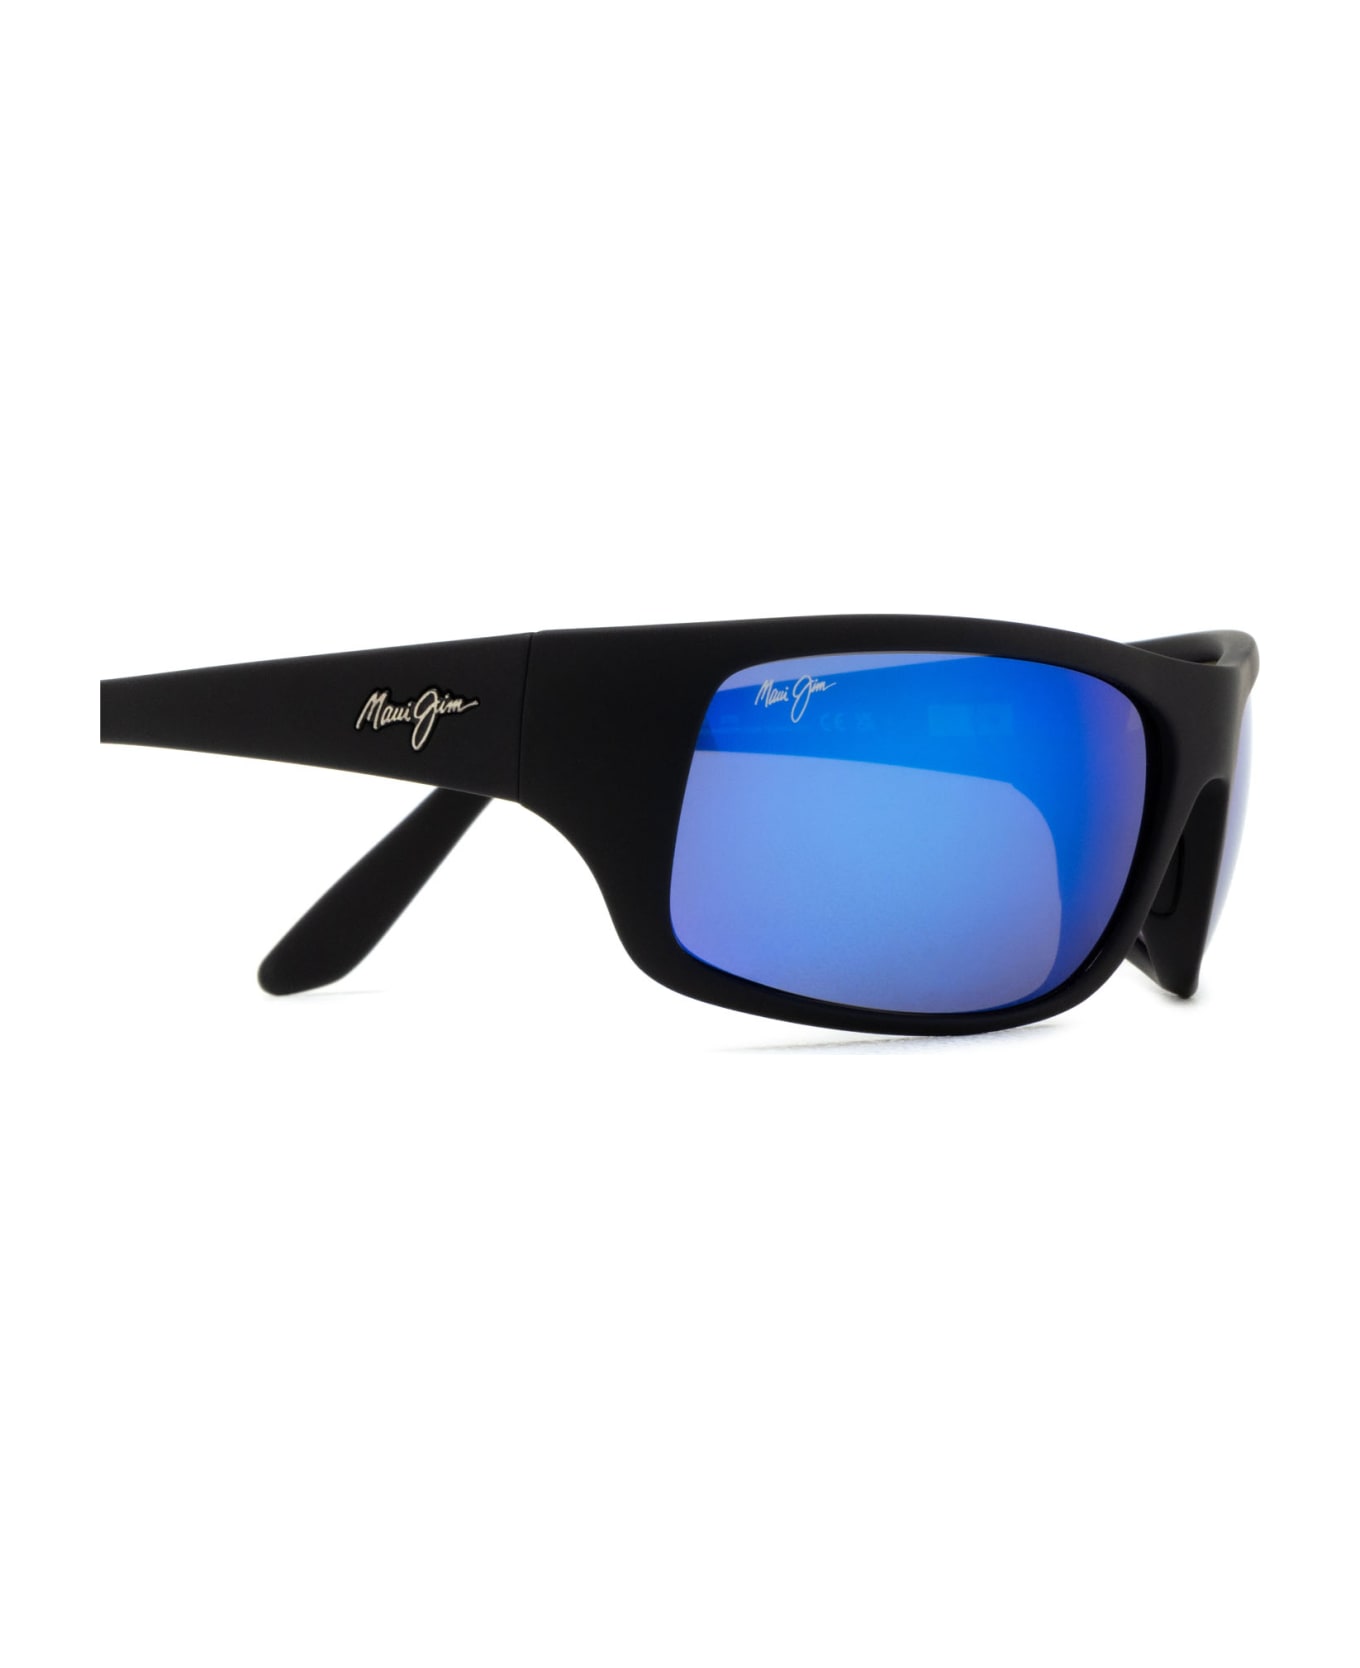 Maui Jim Mj0202s Black Sunglasses - Black サングラス